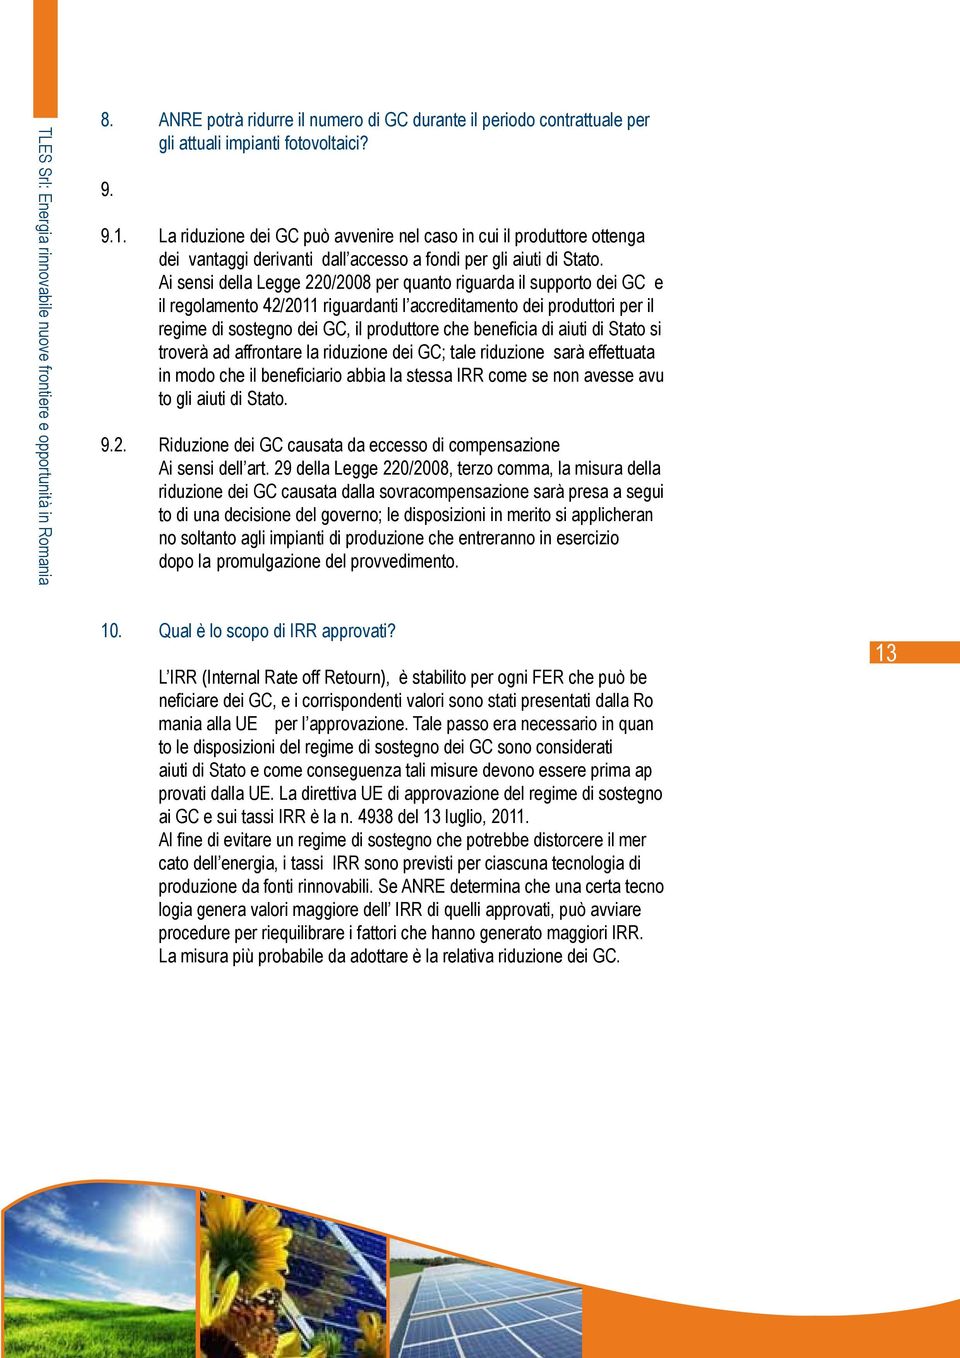 Ai sensi della Legge 220/2008 per quanto riguarda il supporto dei GC e il regolamento 42/2011 riguardanti l accreditamento dei produttori per il regime di sostegno dei GC, il produttore che beneficia